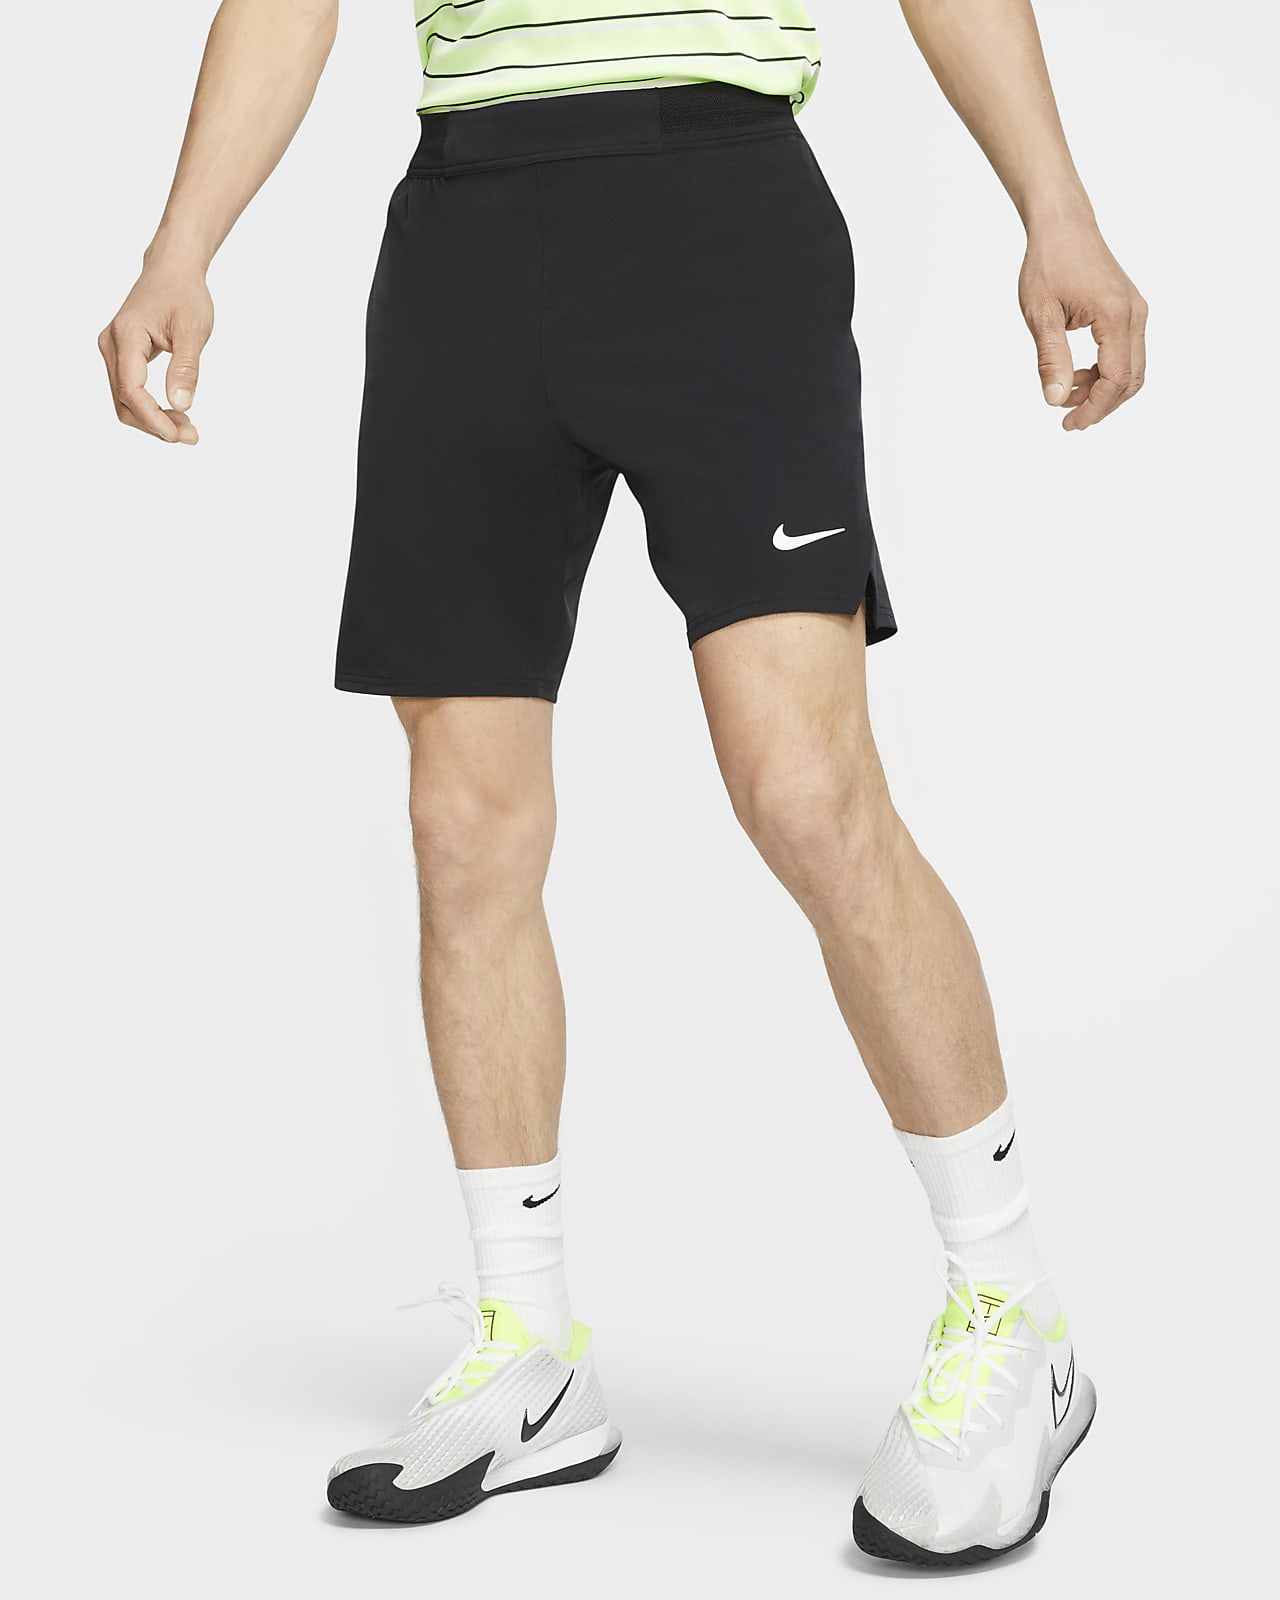 NikeCourt Flex Ace Herren-Tennisshorts (ca. 23 cm)